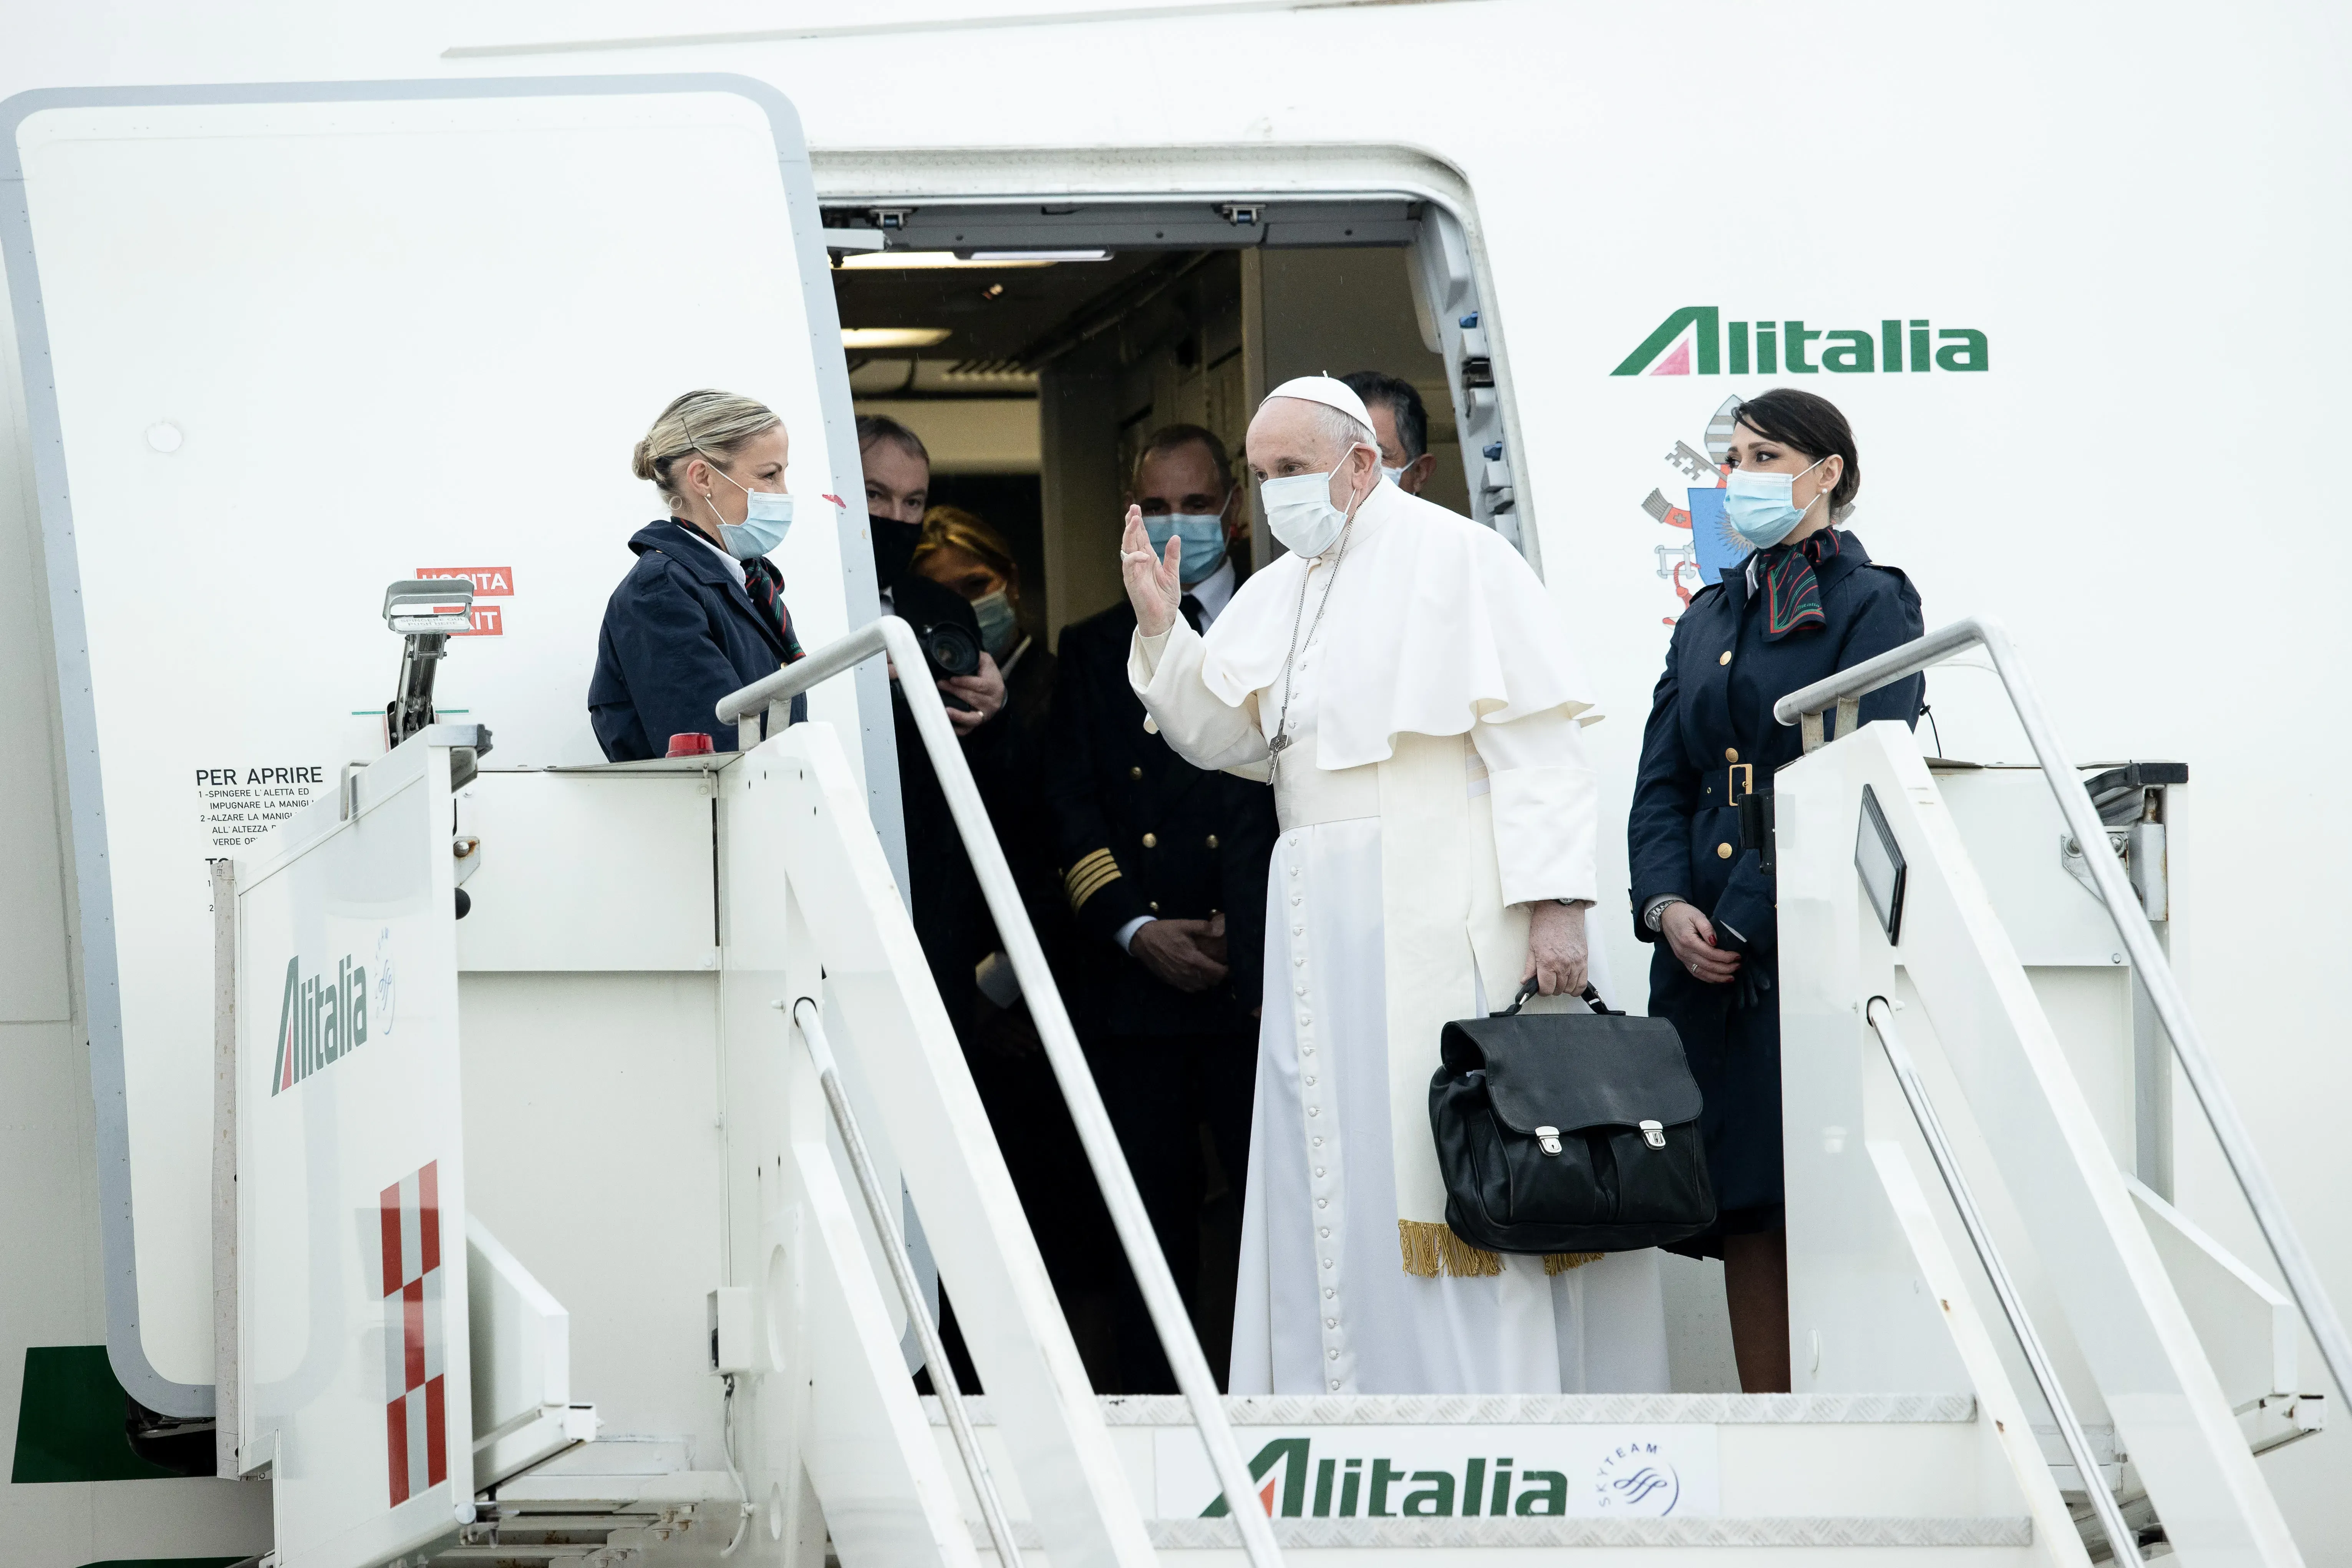 Le pape François monte à bord de l'avion papal avant une visite en Irak le 5 mars 2021. Daniel Ibanez/CNA